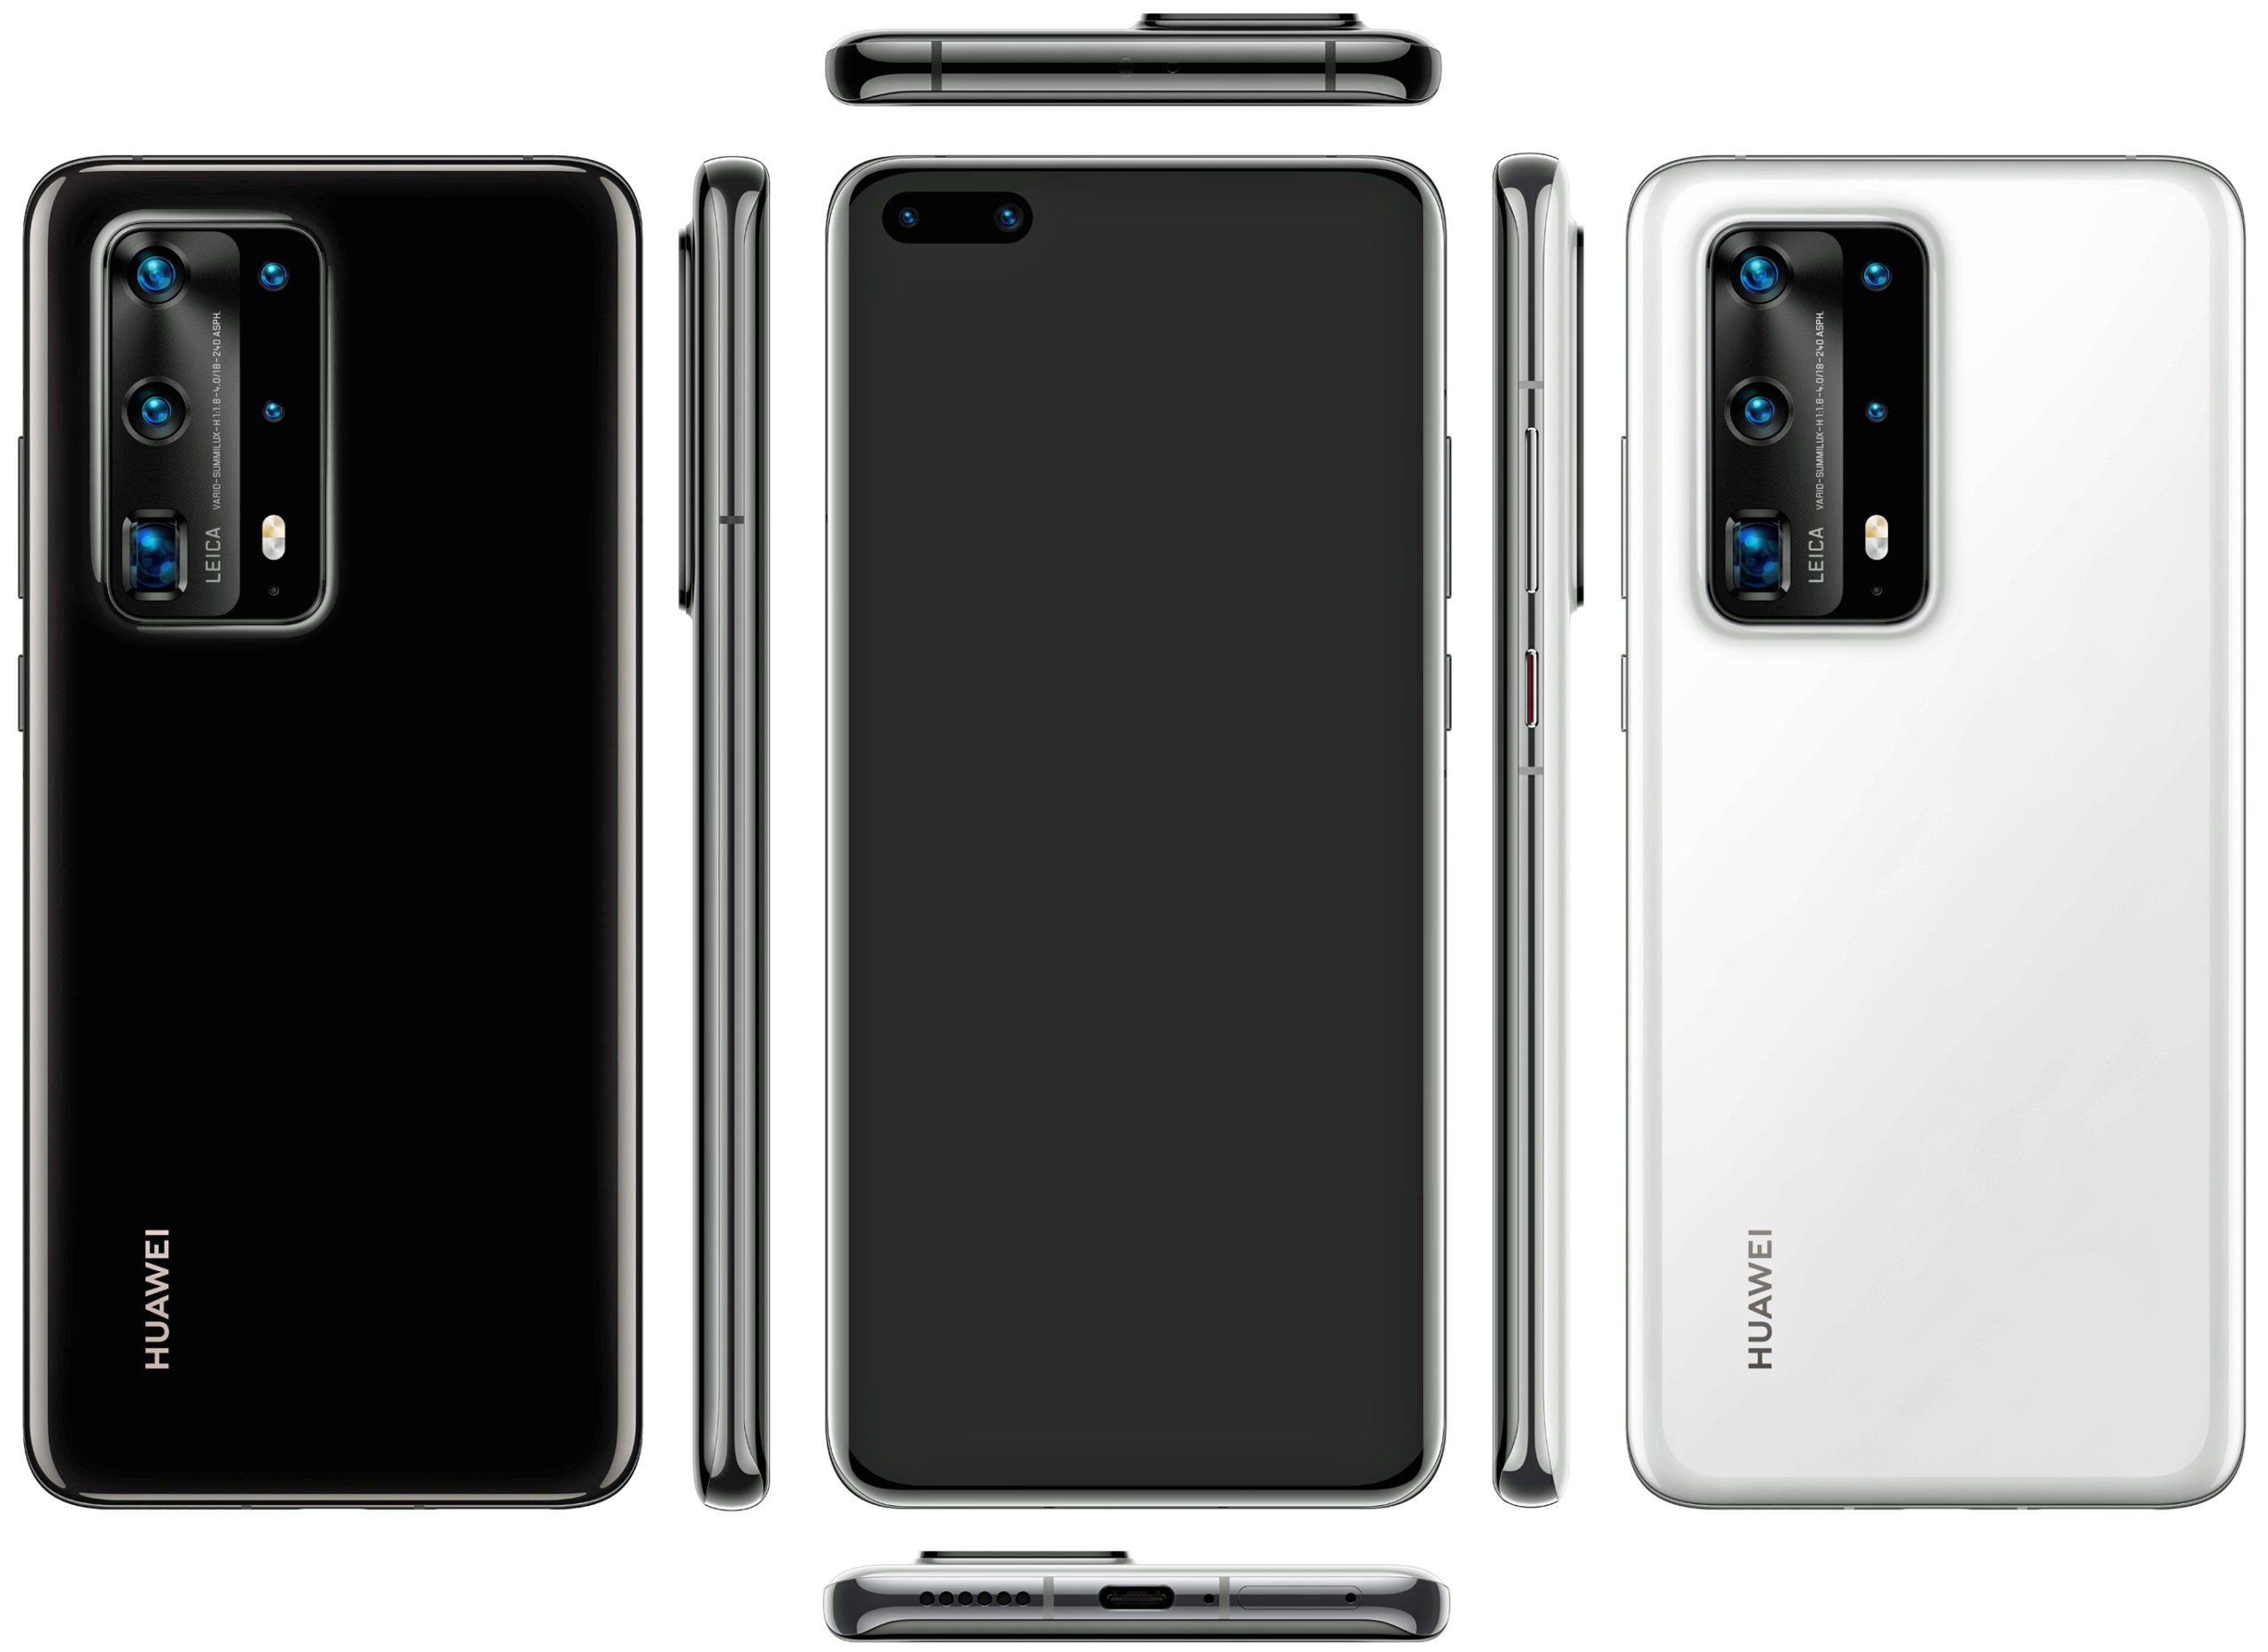 Suriin ang Huawei P40 Pro Premium smartphone na may mga pangunahing tampok